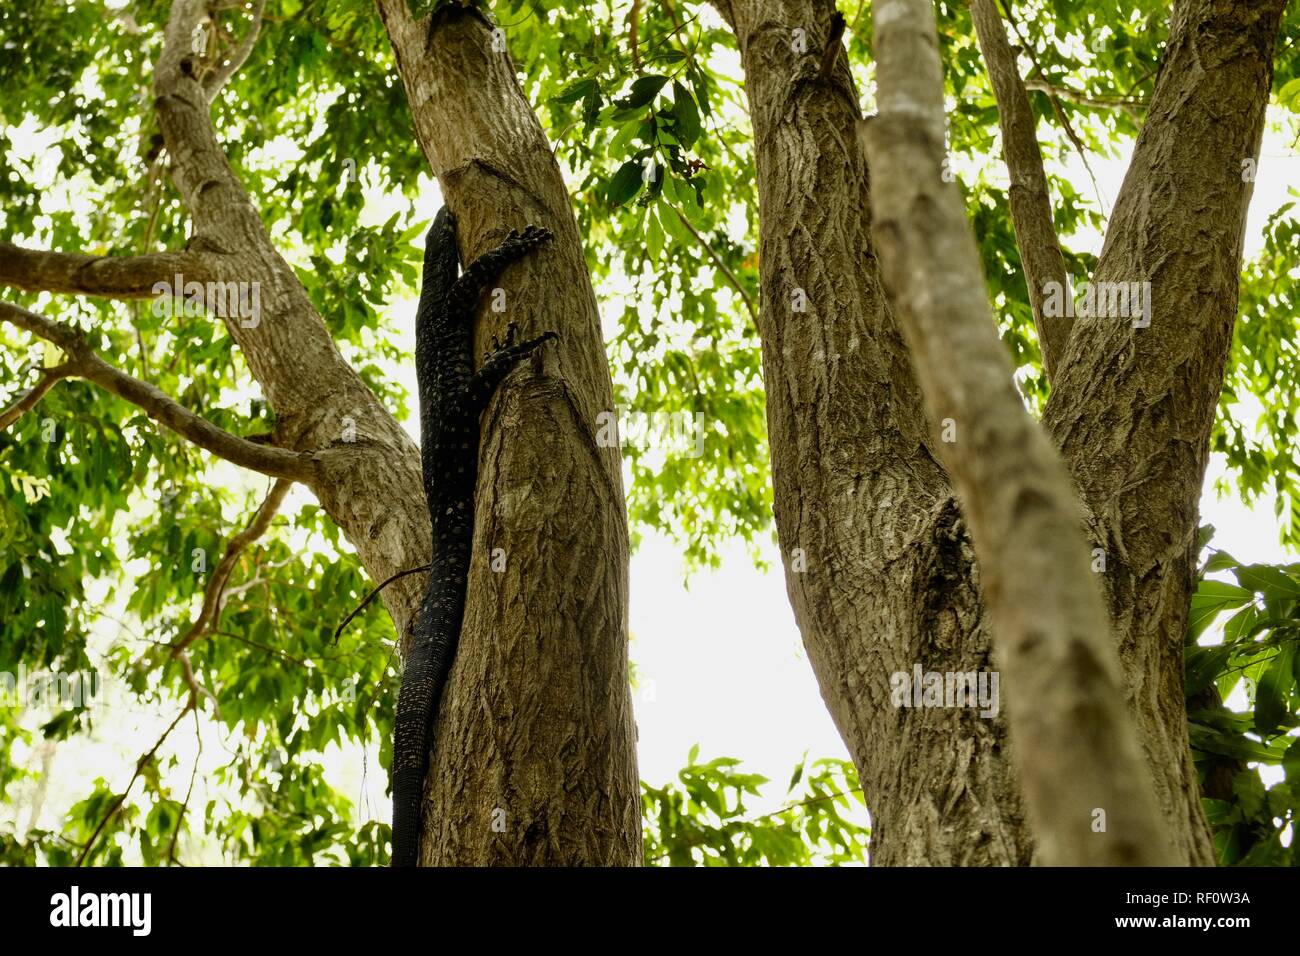 Goanna in a tree, Mia Mia State Forest, Queensland, Australia Stock Photo